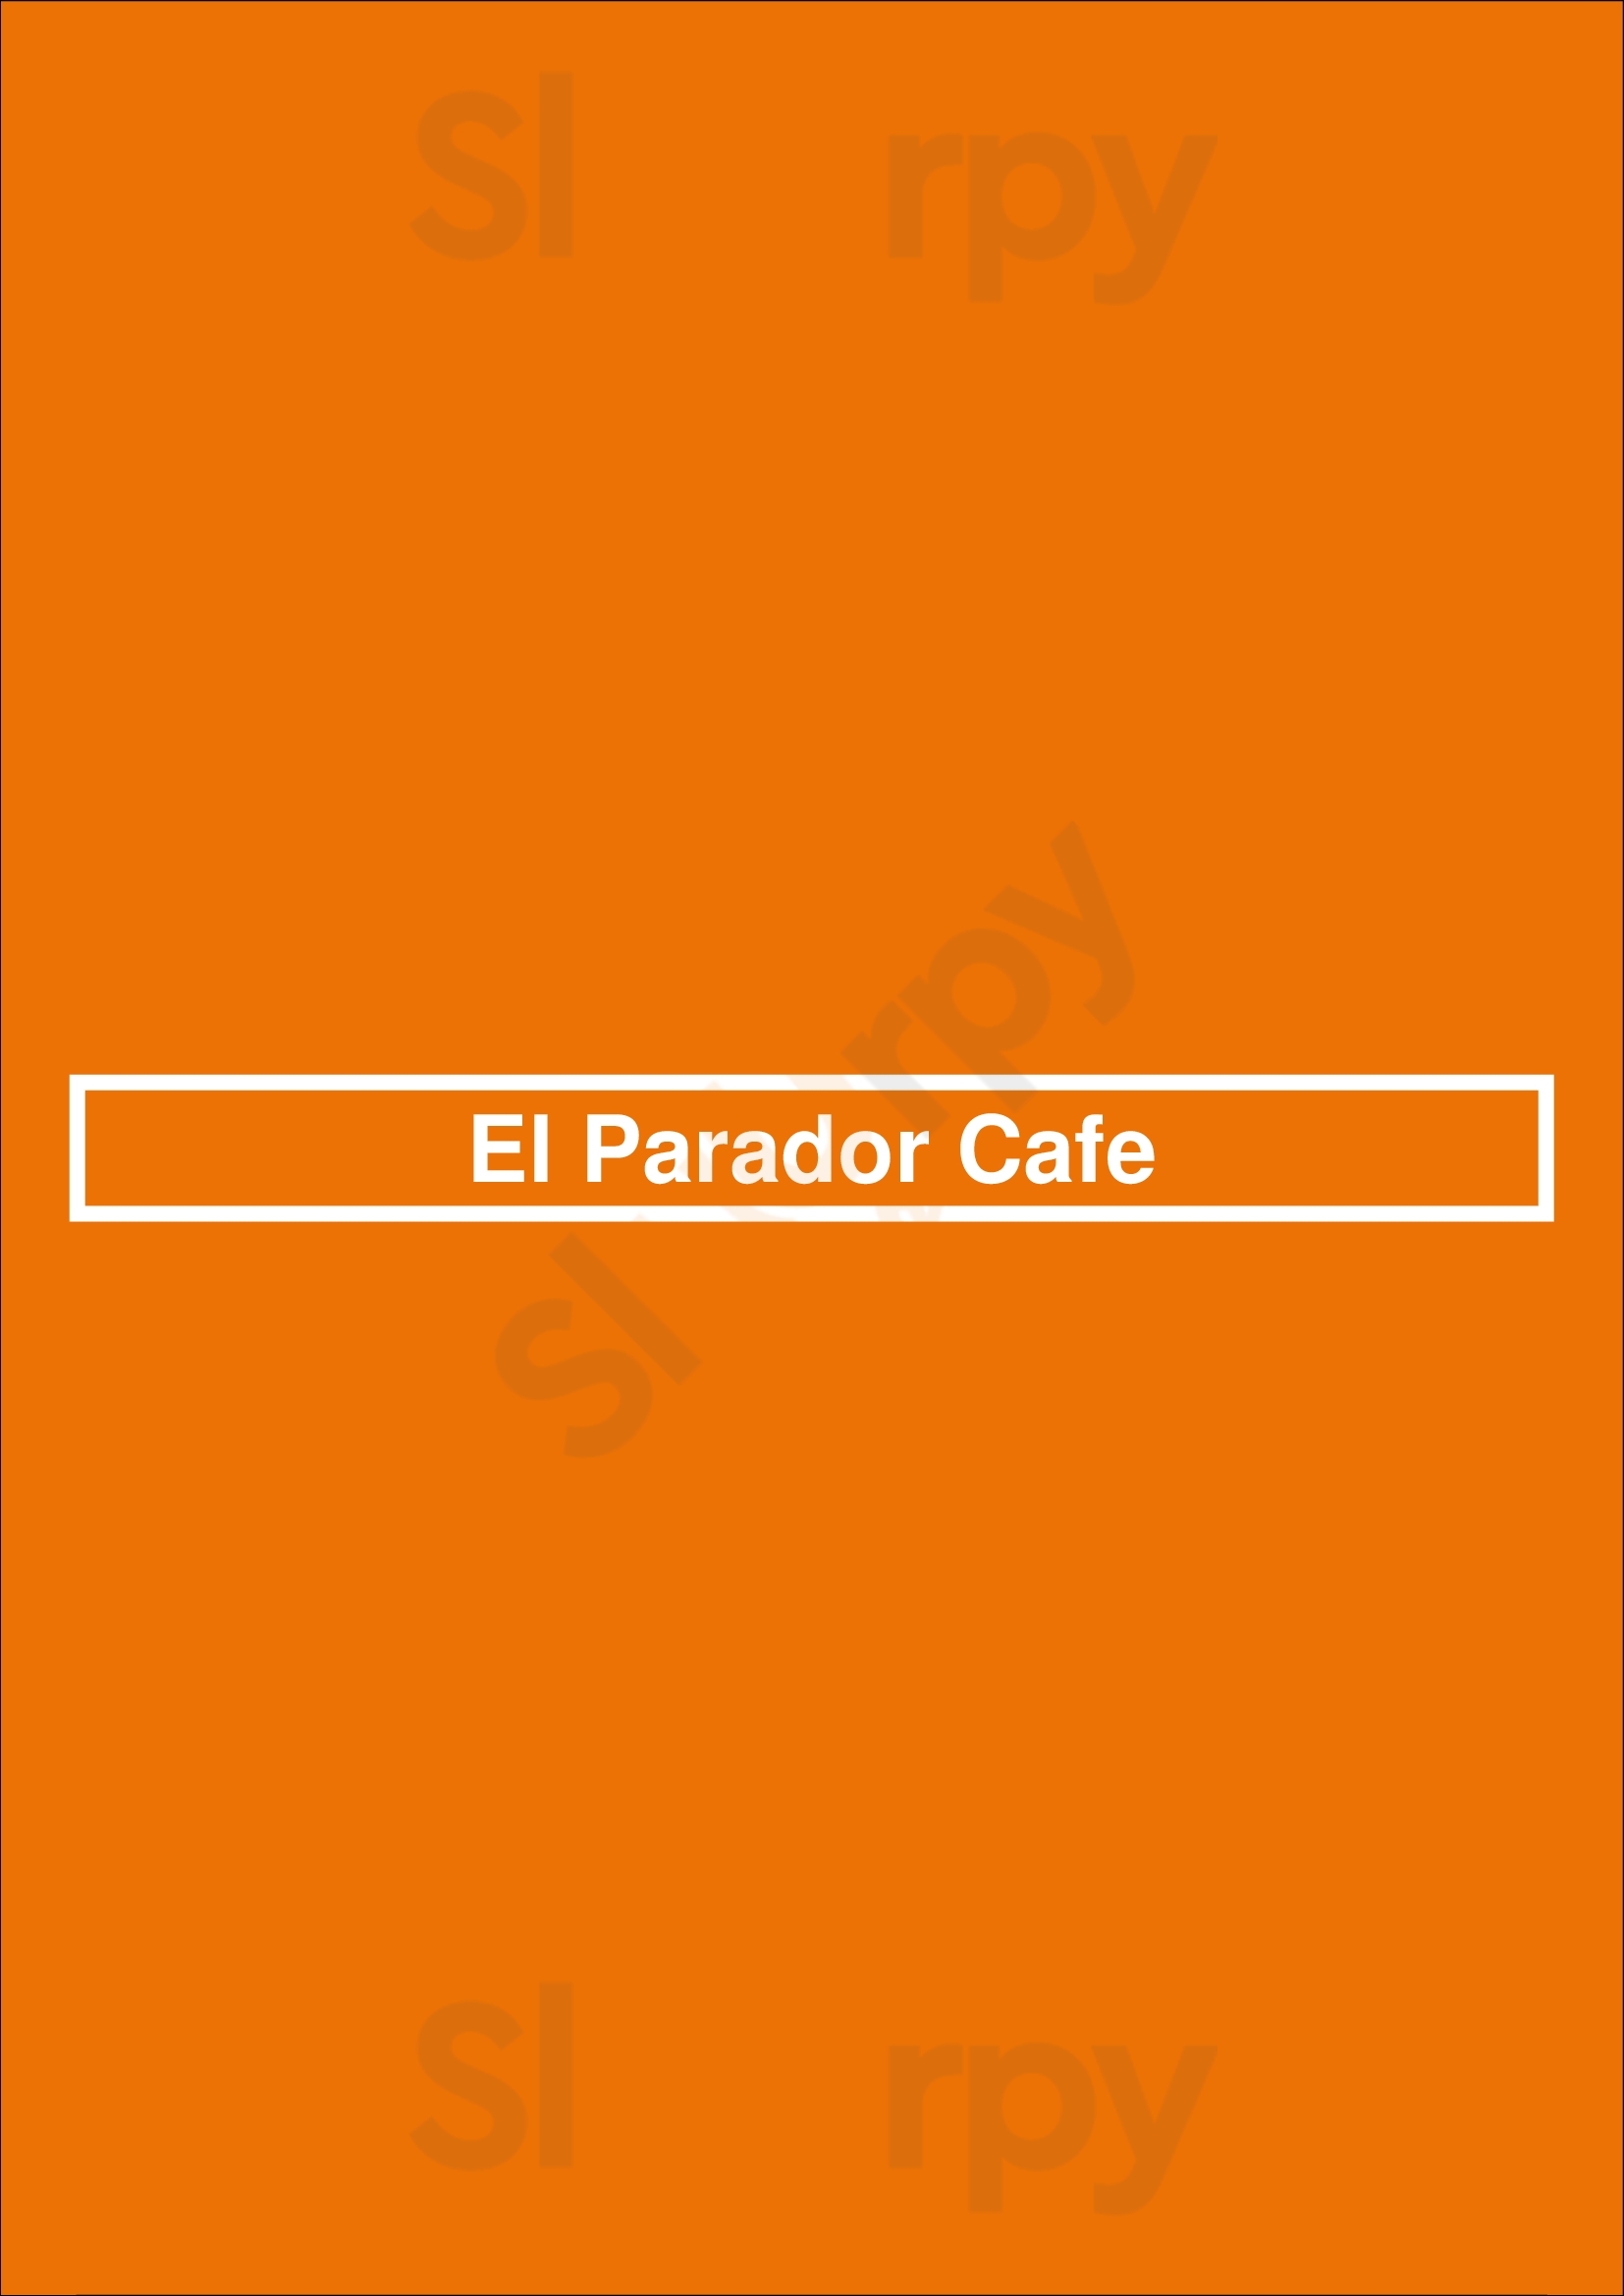 El Parador Cafe New York City Menu - 1